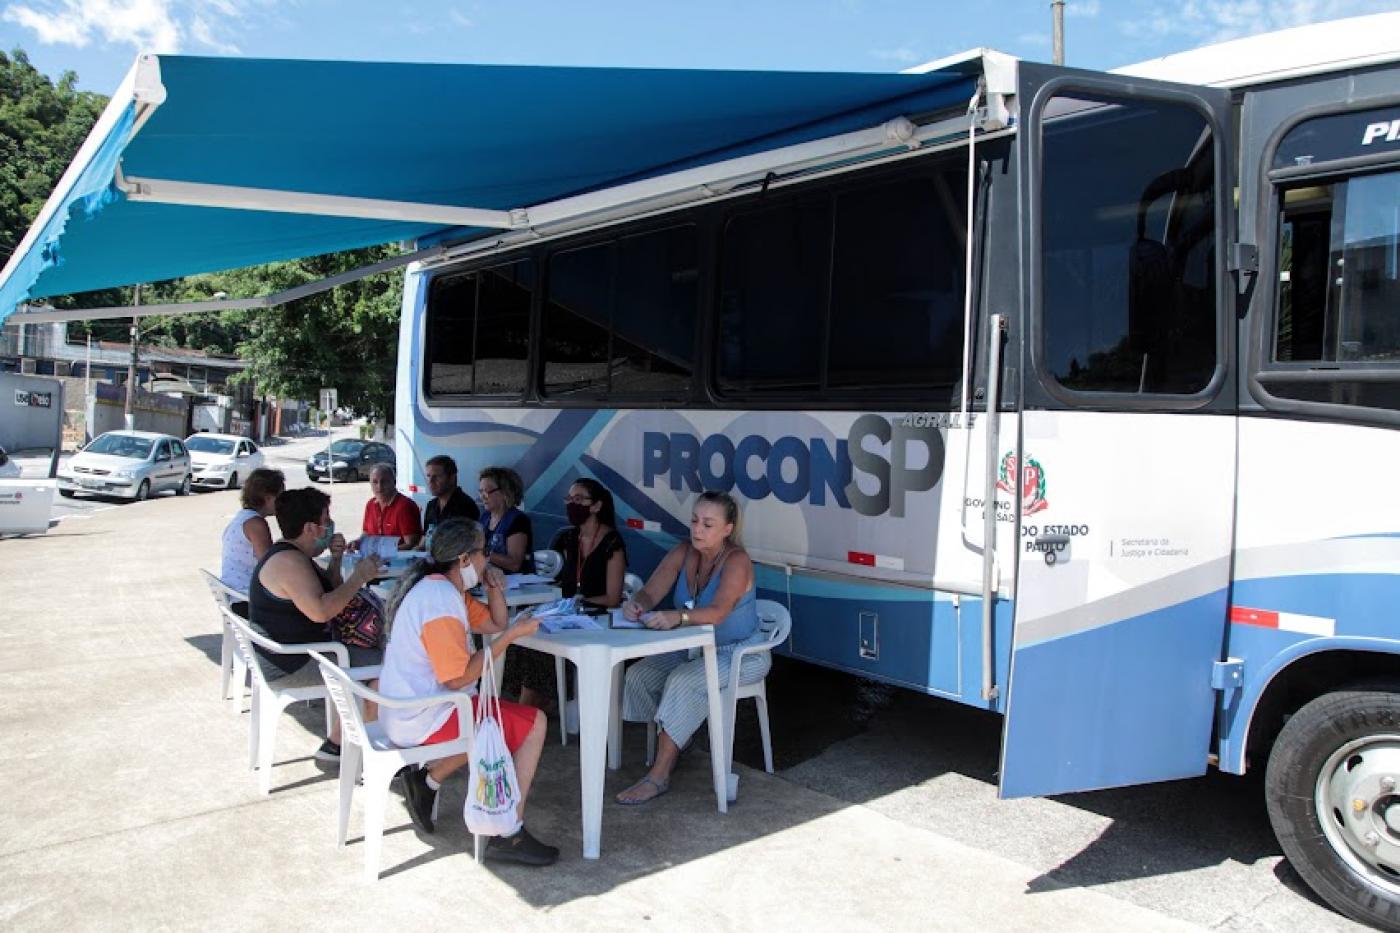 Ônibus do procon móvel está parado. Pessoas estão sentadas sendo atendidas por recepcionistas. #paratodosverem